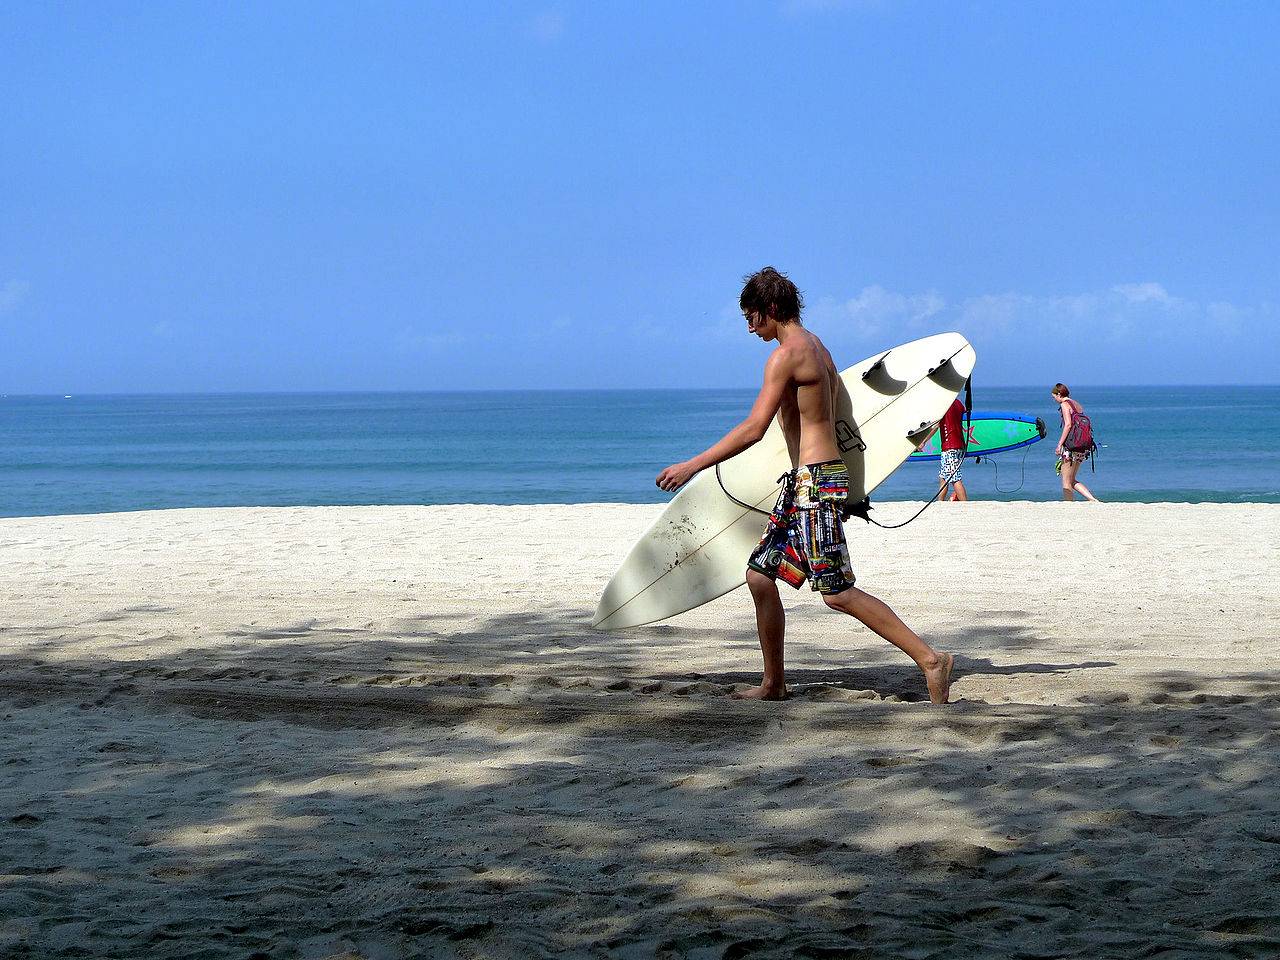 เดินเล่นหย่อนใจที่ชายหาดคูตา (Kuta beach) อินโดนีเซีย 